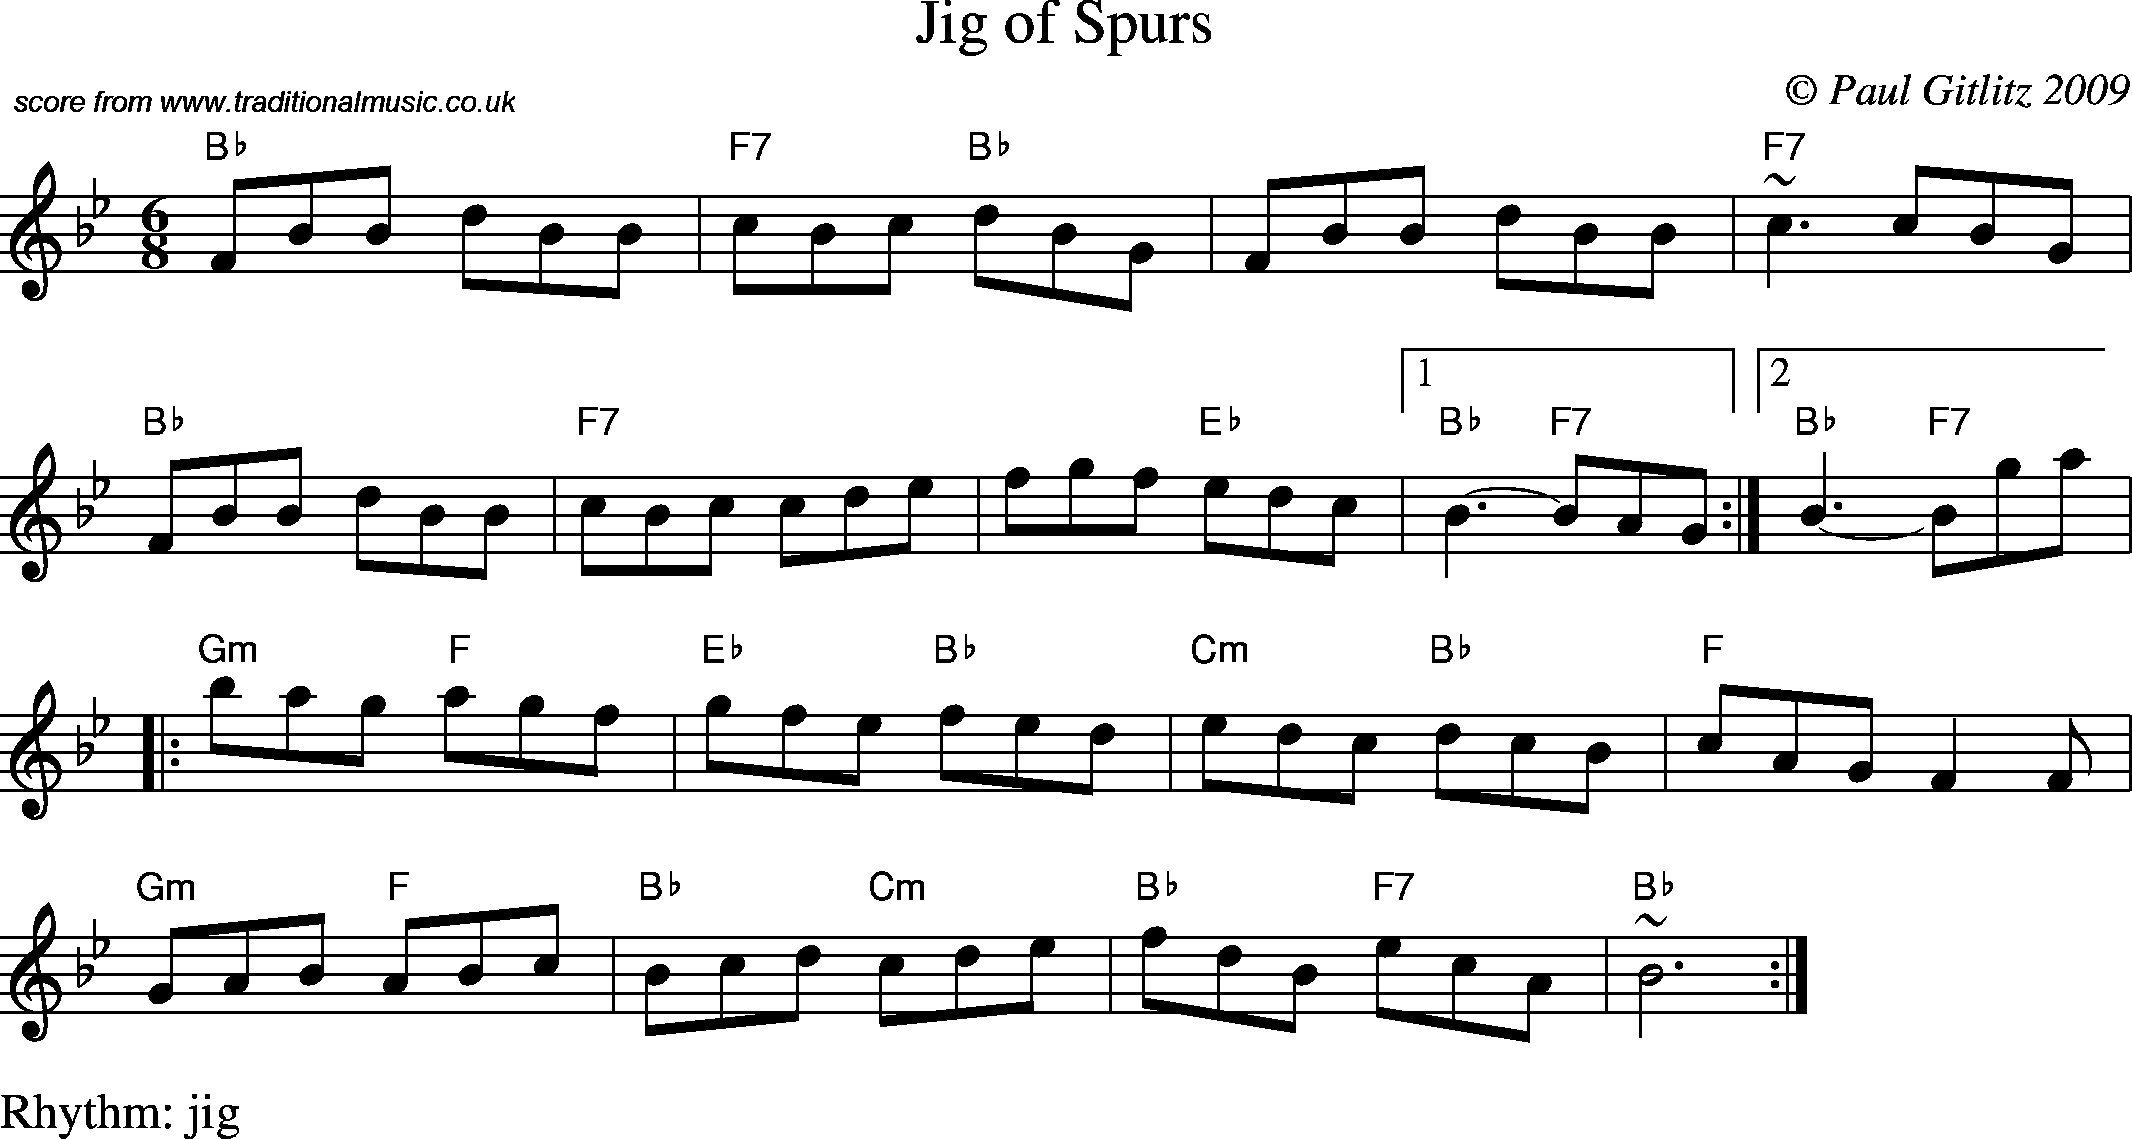 Sheet Music Score for Jig - Jig of Spurs.